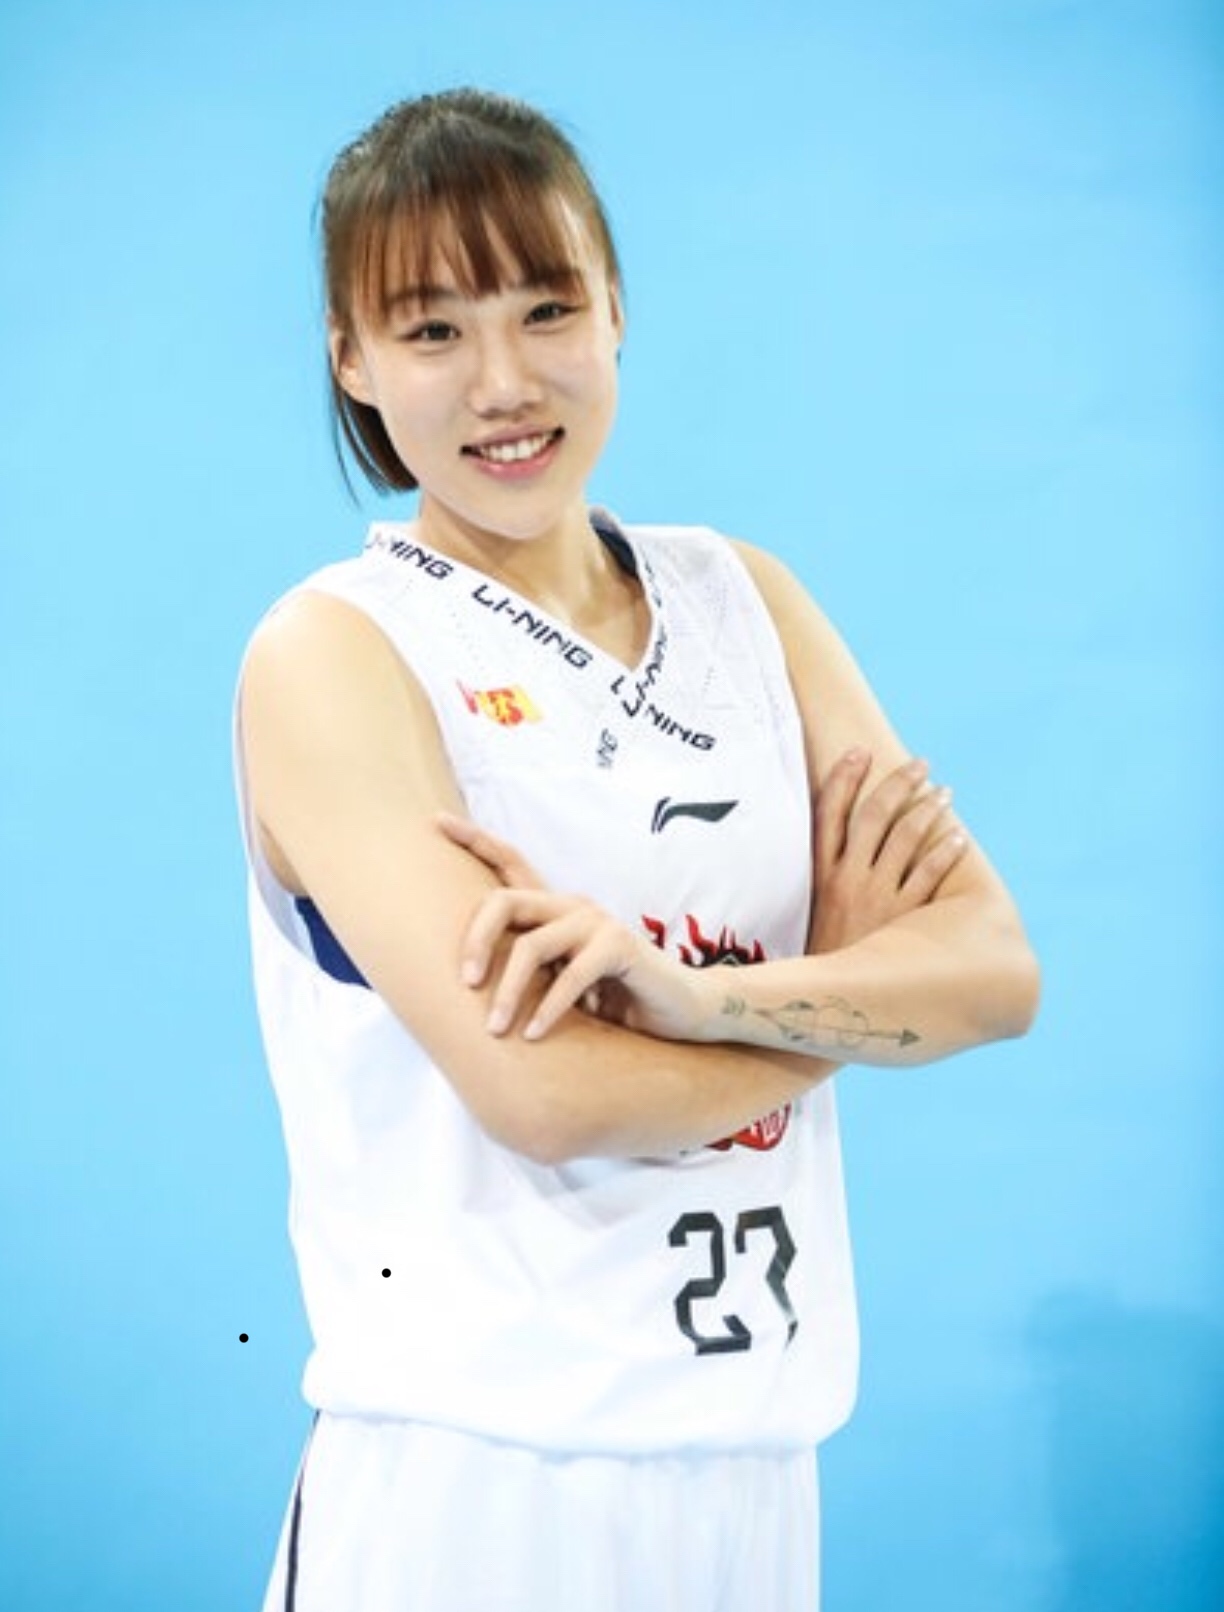 王藝諾(中國女子籃球運動員)